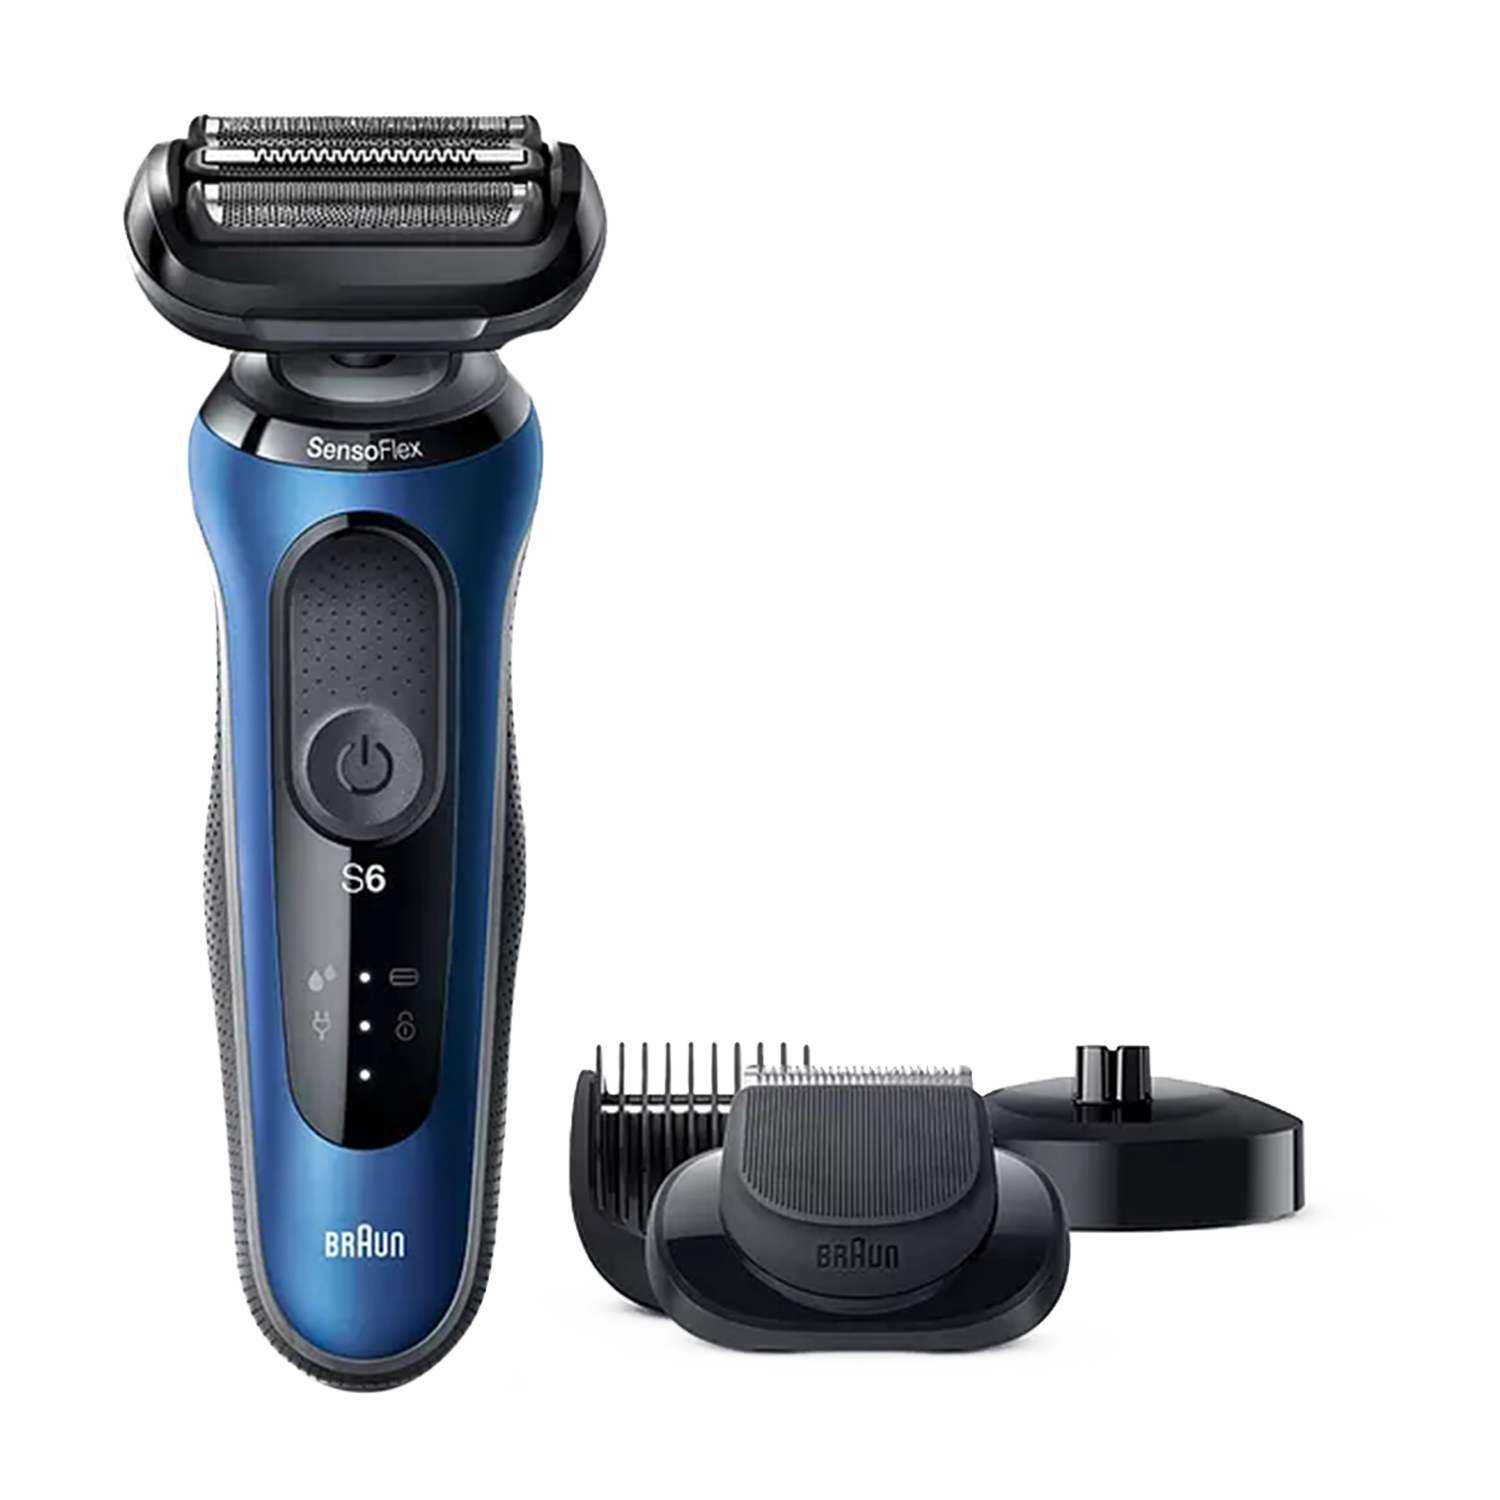 Braun Series 6 afeitadora hombre de barba con recortadora y cabezal sensoflex base carga recargable resistente al agua 60b4500 cs azul 60b4500cs